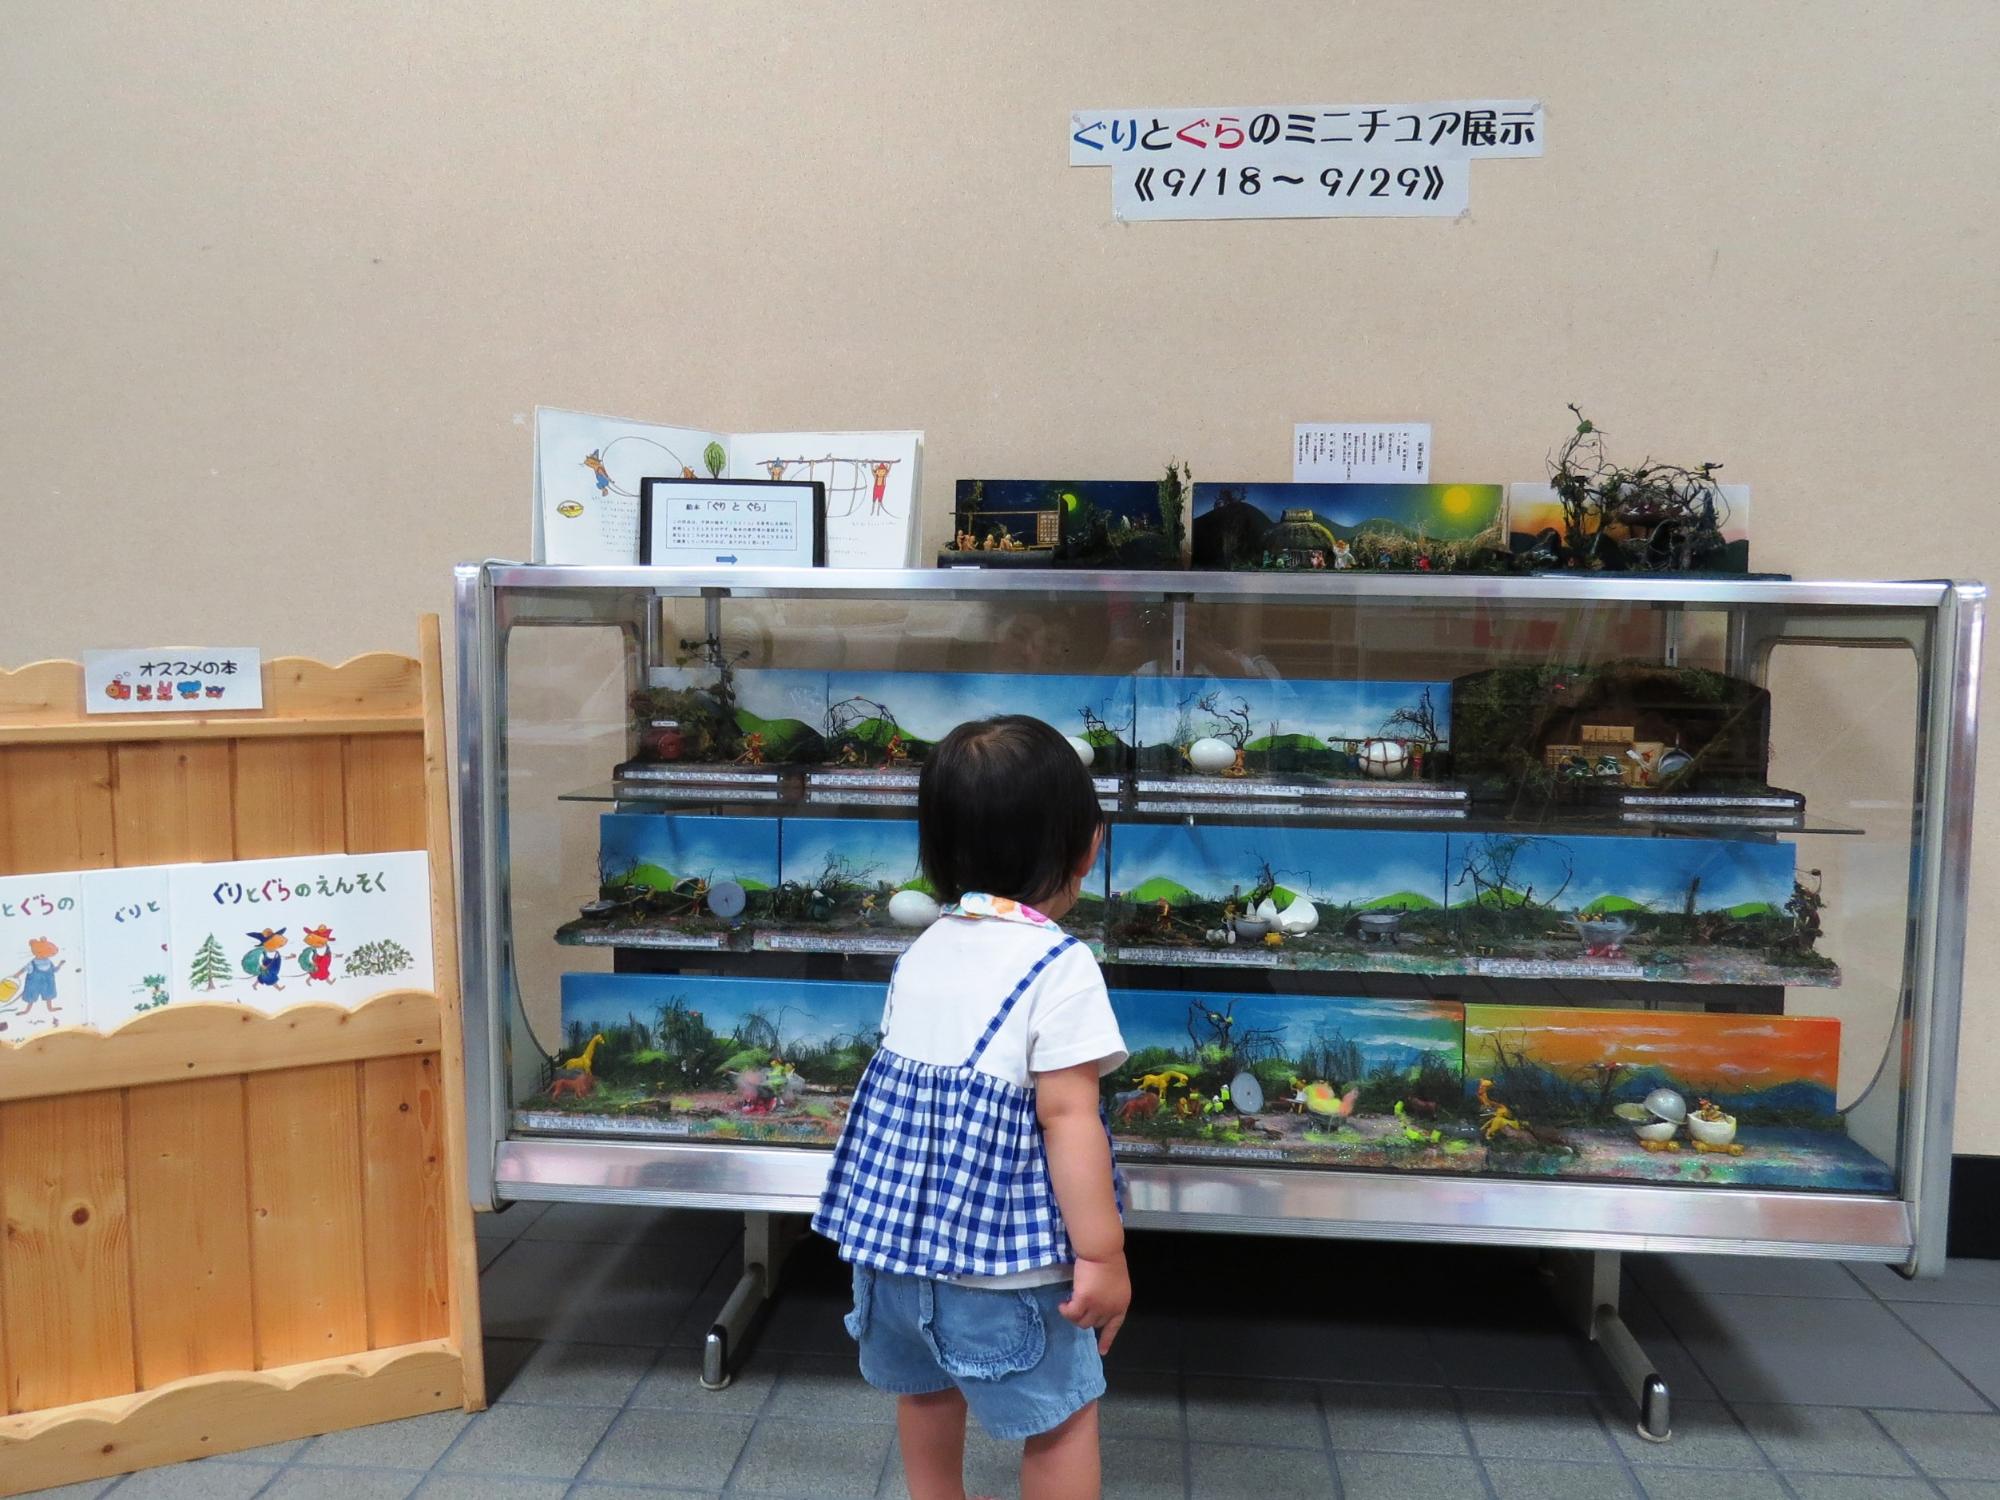 学遊館ロビーにてぐりとぐらのミニチュア展示を見ている小さな女の子の写真